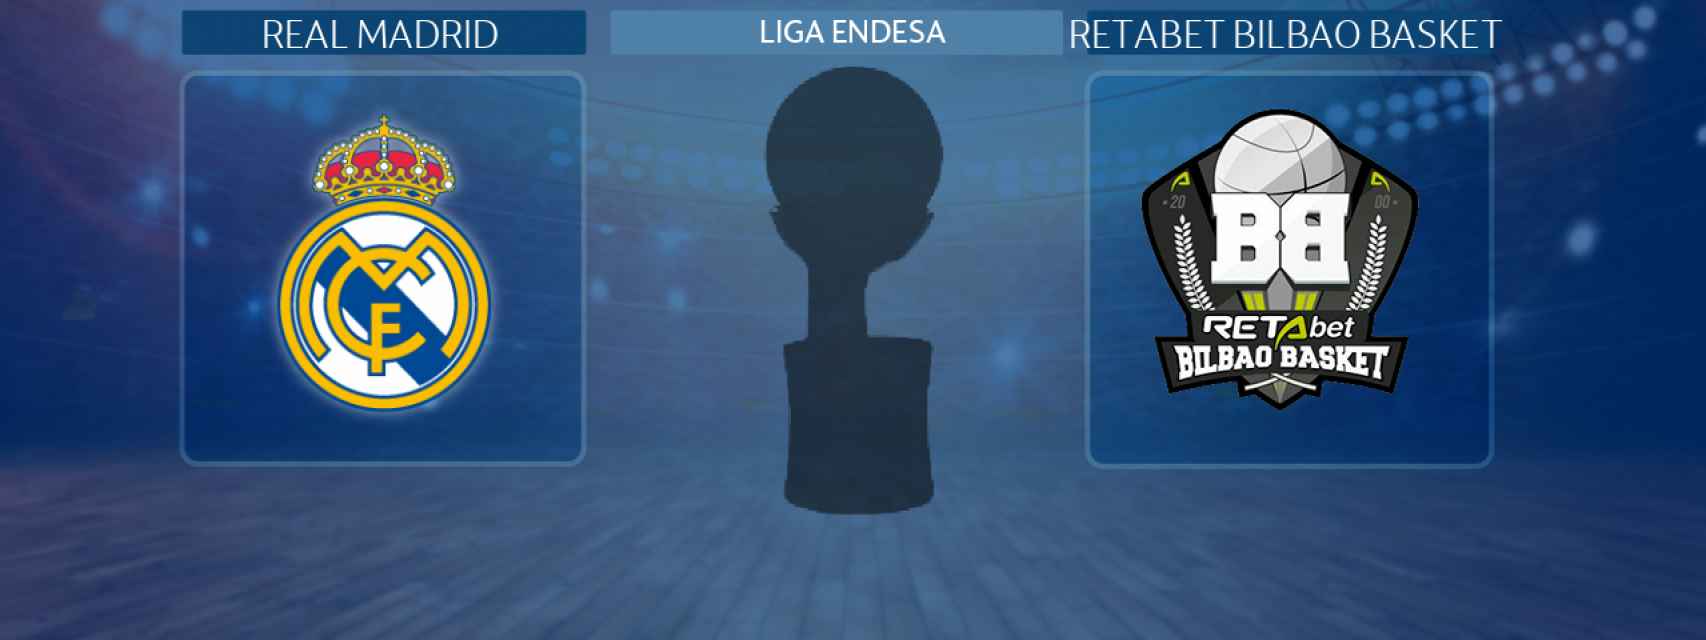 Real Madrid - RETAbet Bilbao Basket, partido de la Liga Endesa